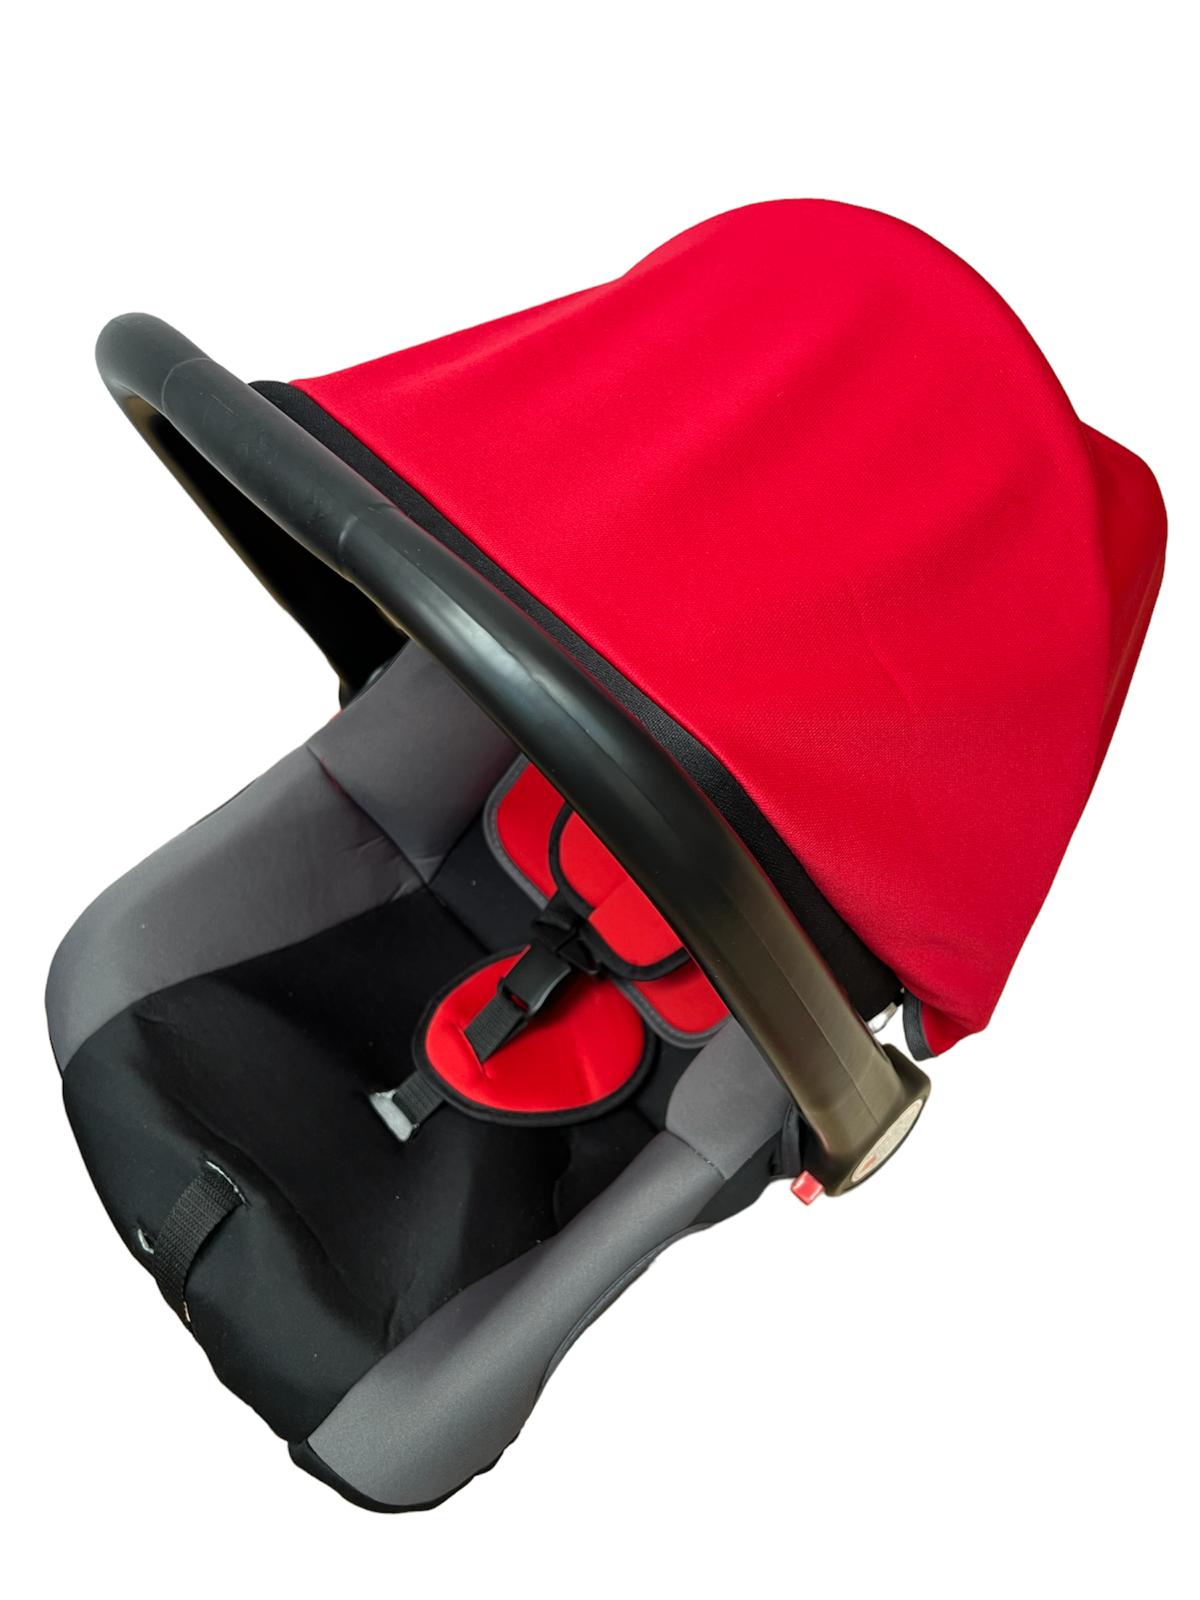 Scaun auto tip scoica pentru bebelusi, maner reglabil, 26 cm, CM01